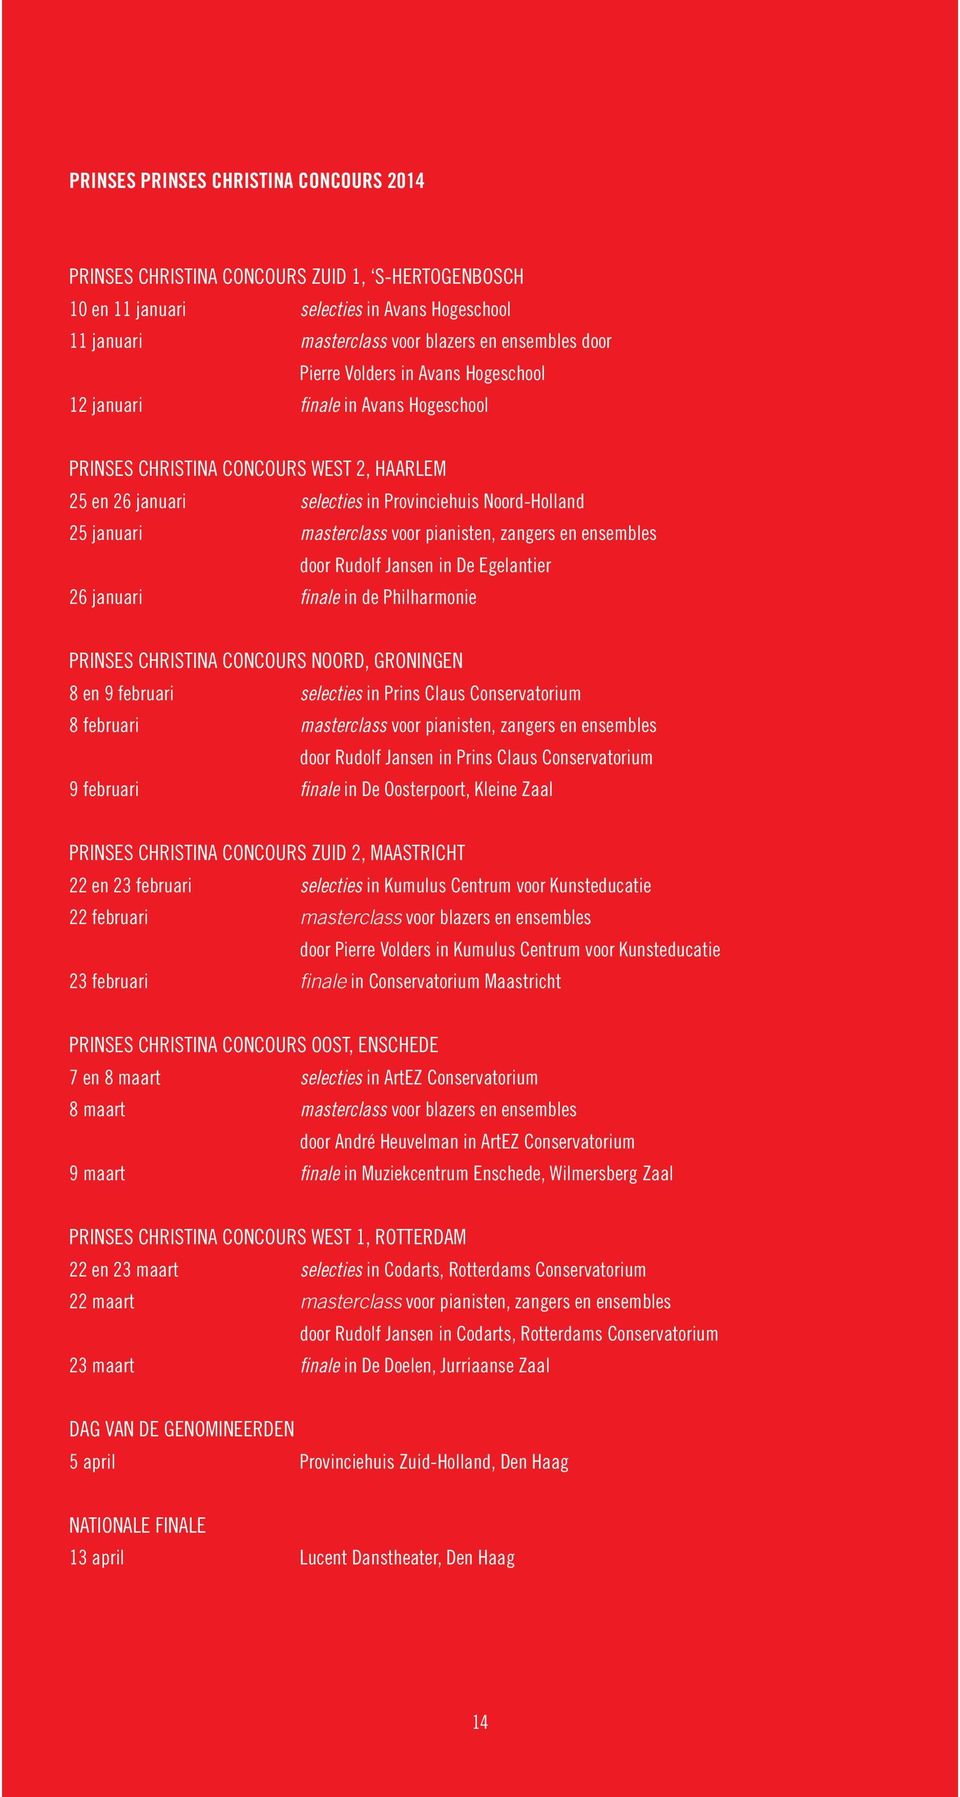 pianisten, zangers en ensembles door Rudolf Jansen in De Egelantier 26 januari finale in de Philharmonie PRINSES CHRISTINA CONCOURS NOORD, GRONINGEN 8 en 9 februari selecties in Prins Claus